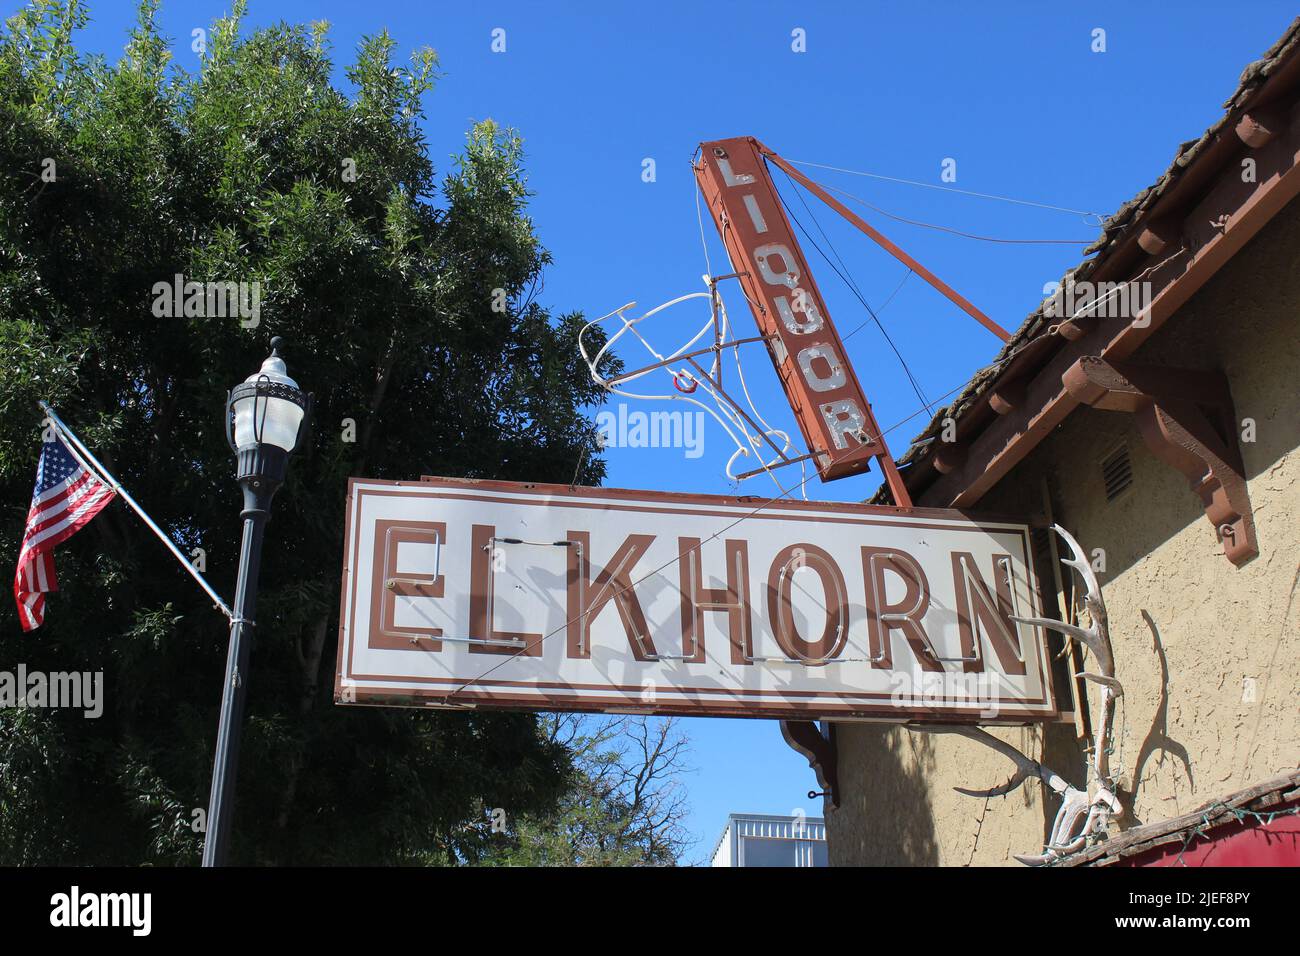 Elkhorn Bar, San Miguel, California Stock Photo